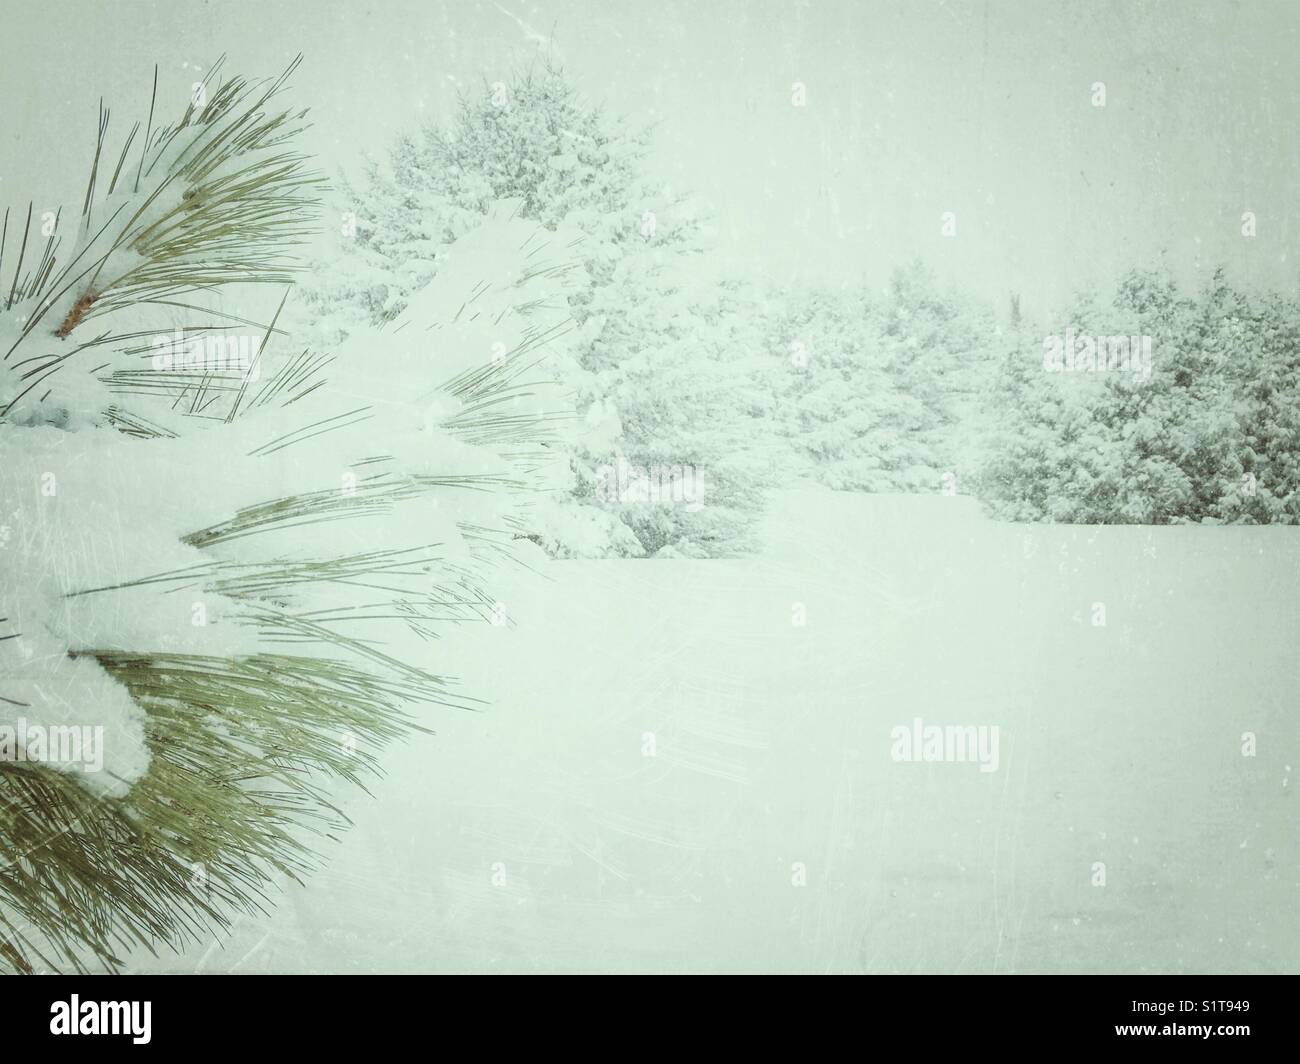 Snowy Szene mit Schnee bedeckt Tannennadeln im Vordergrund und Schnee Boden, Zedern und anderen immergrünen Bäume im Hintergrund Stockfoto